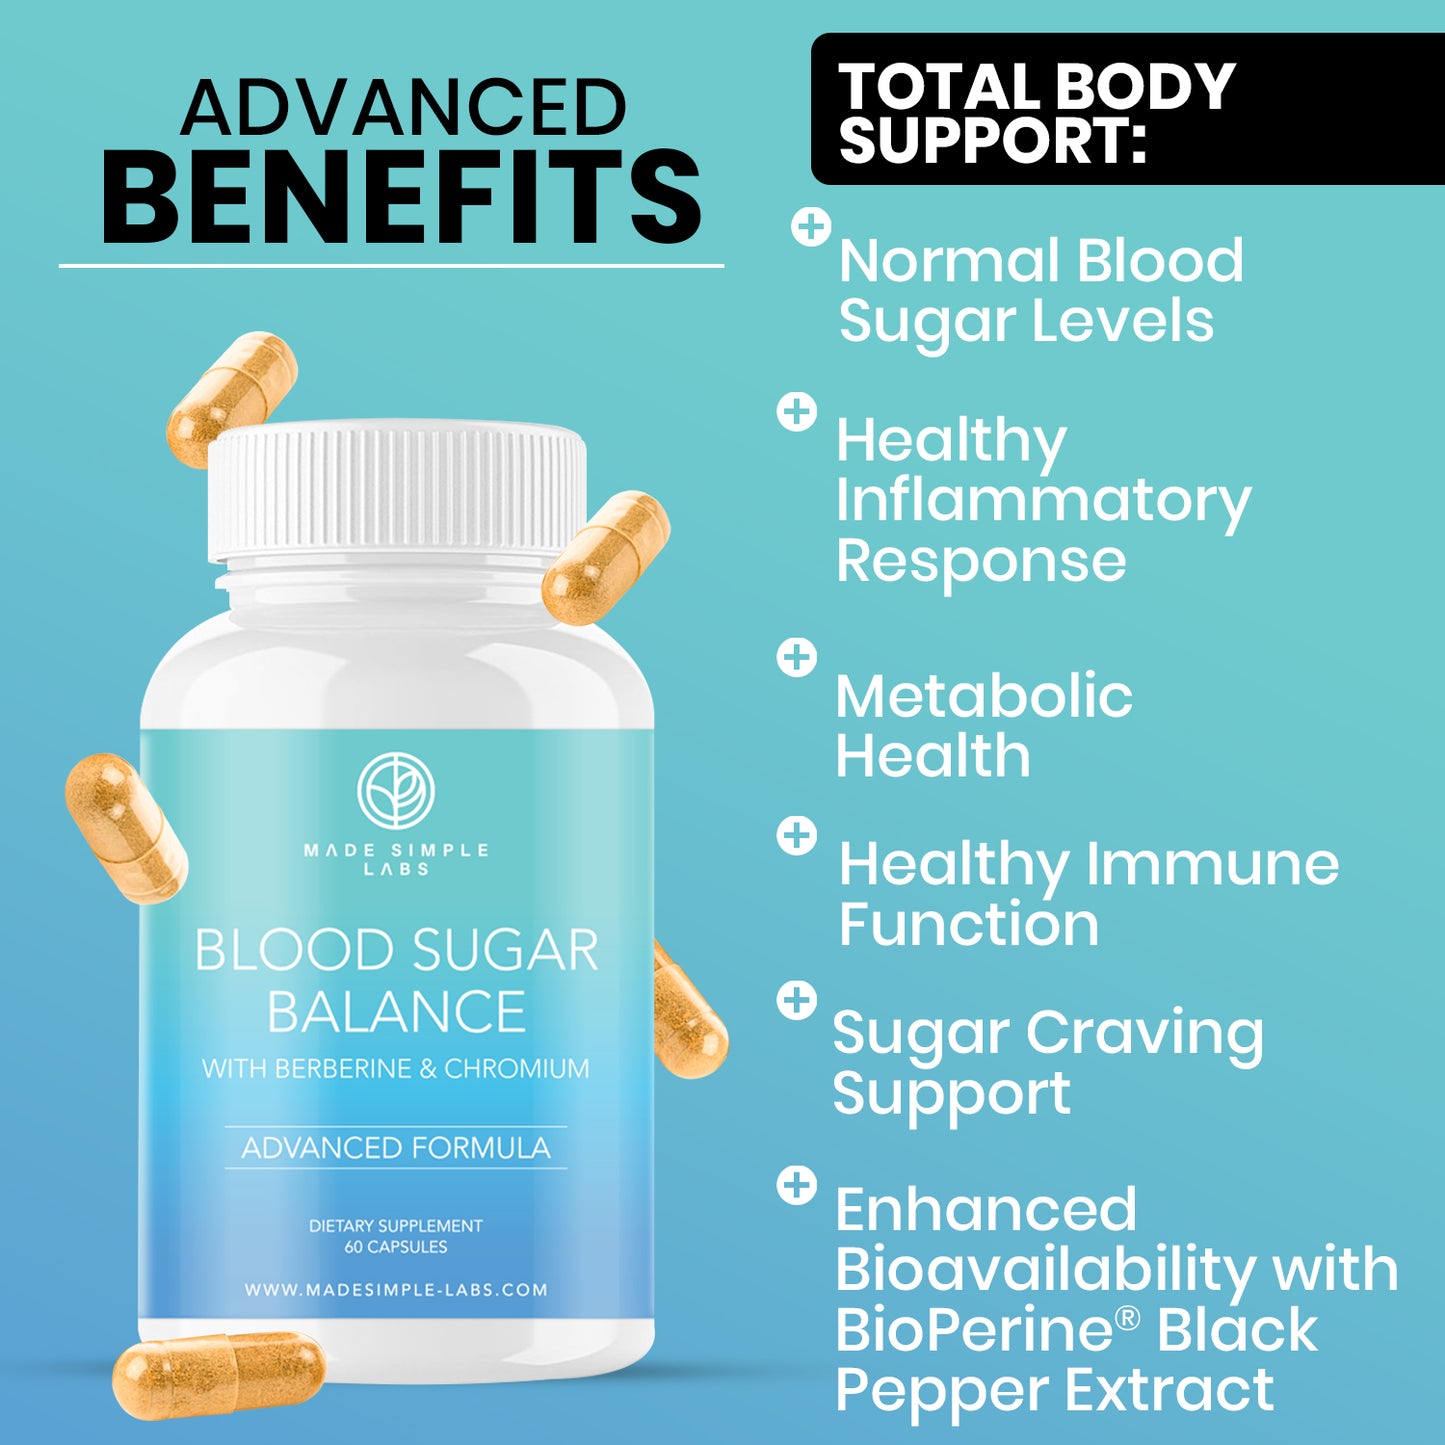 Blood Sugar Balance Advanced Formula